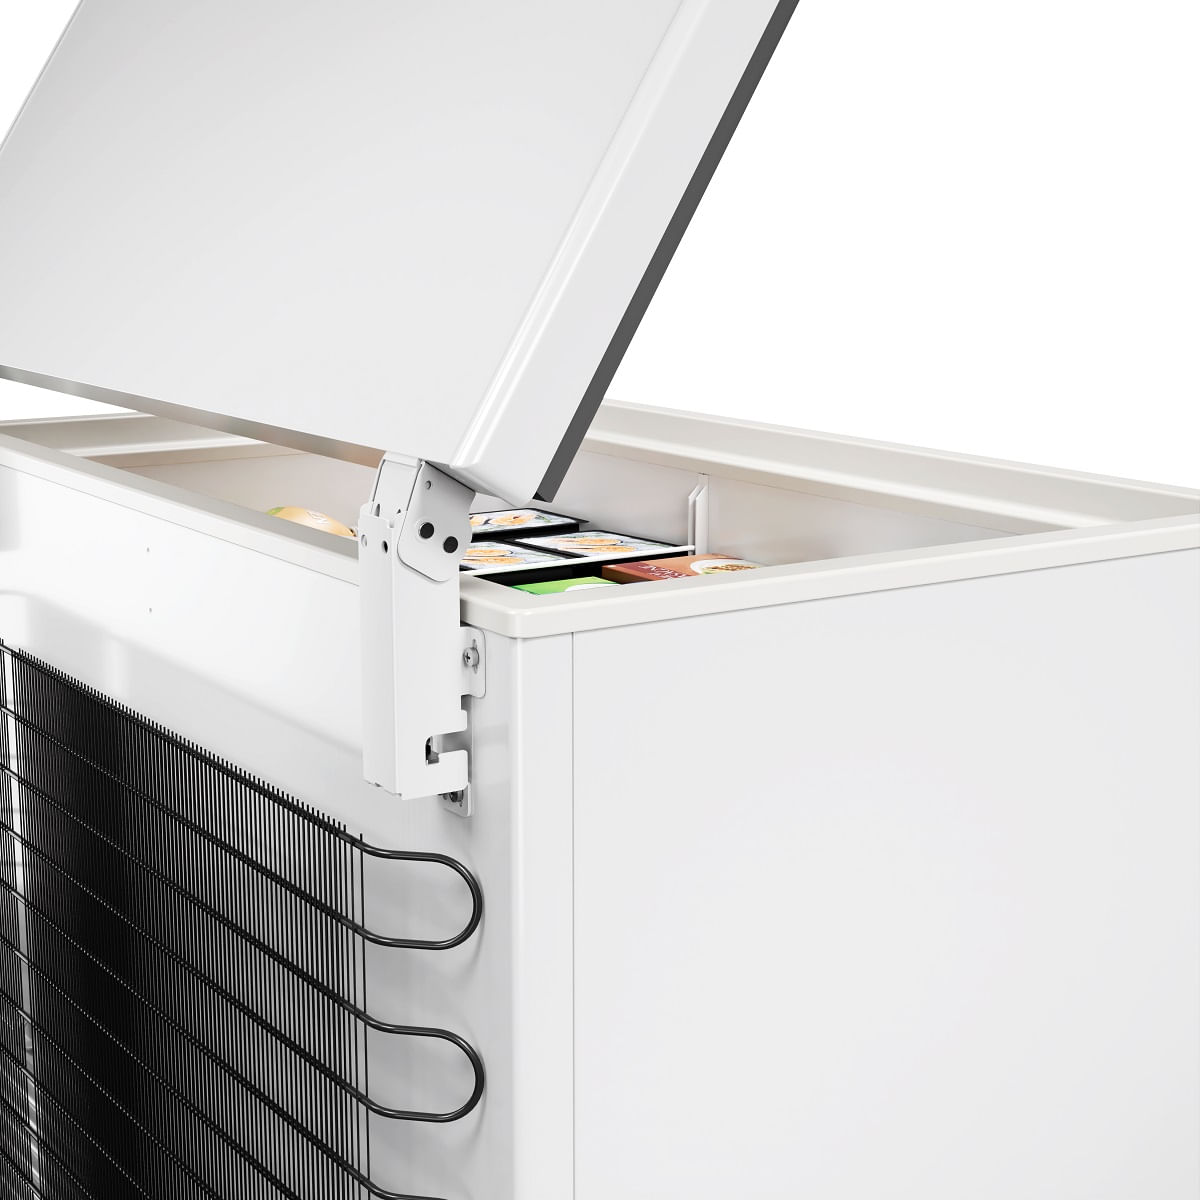 freezer-refrigerador-horizontal-metalfrio-da302-220v-3.jpg